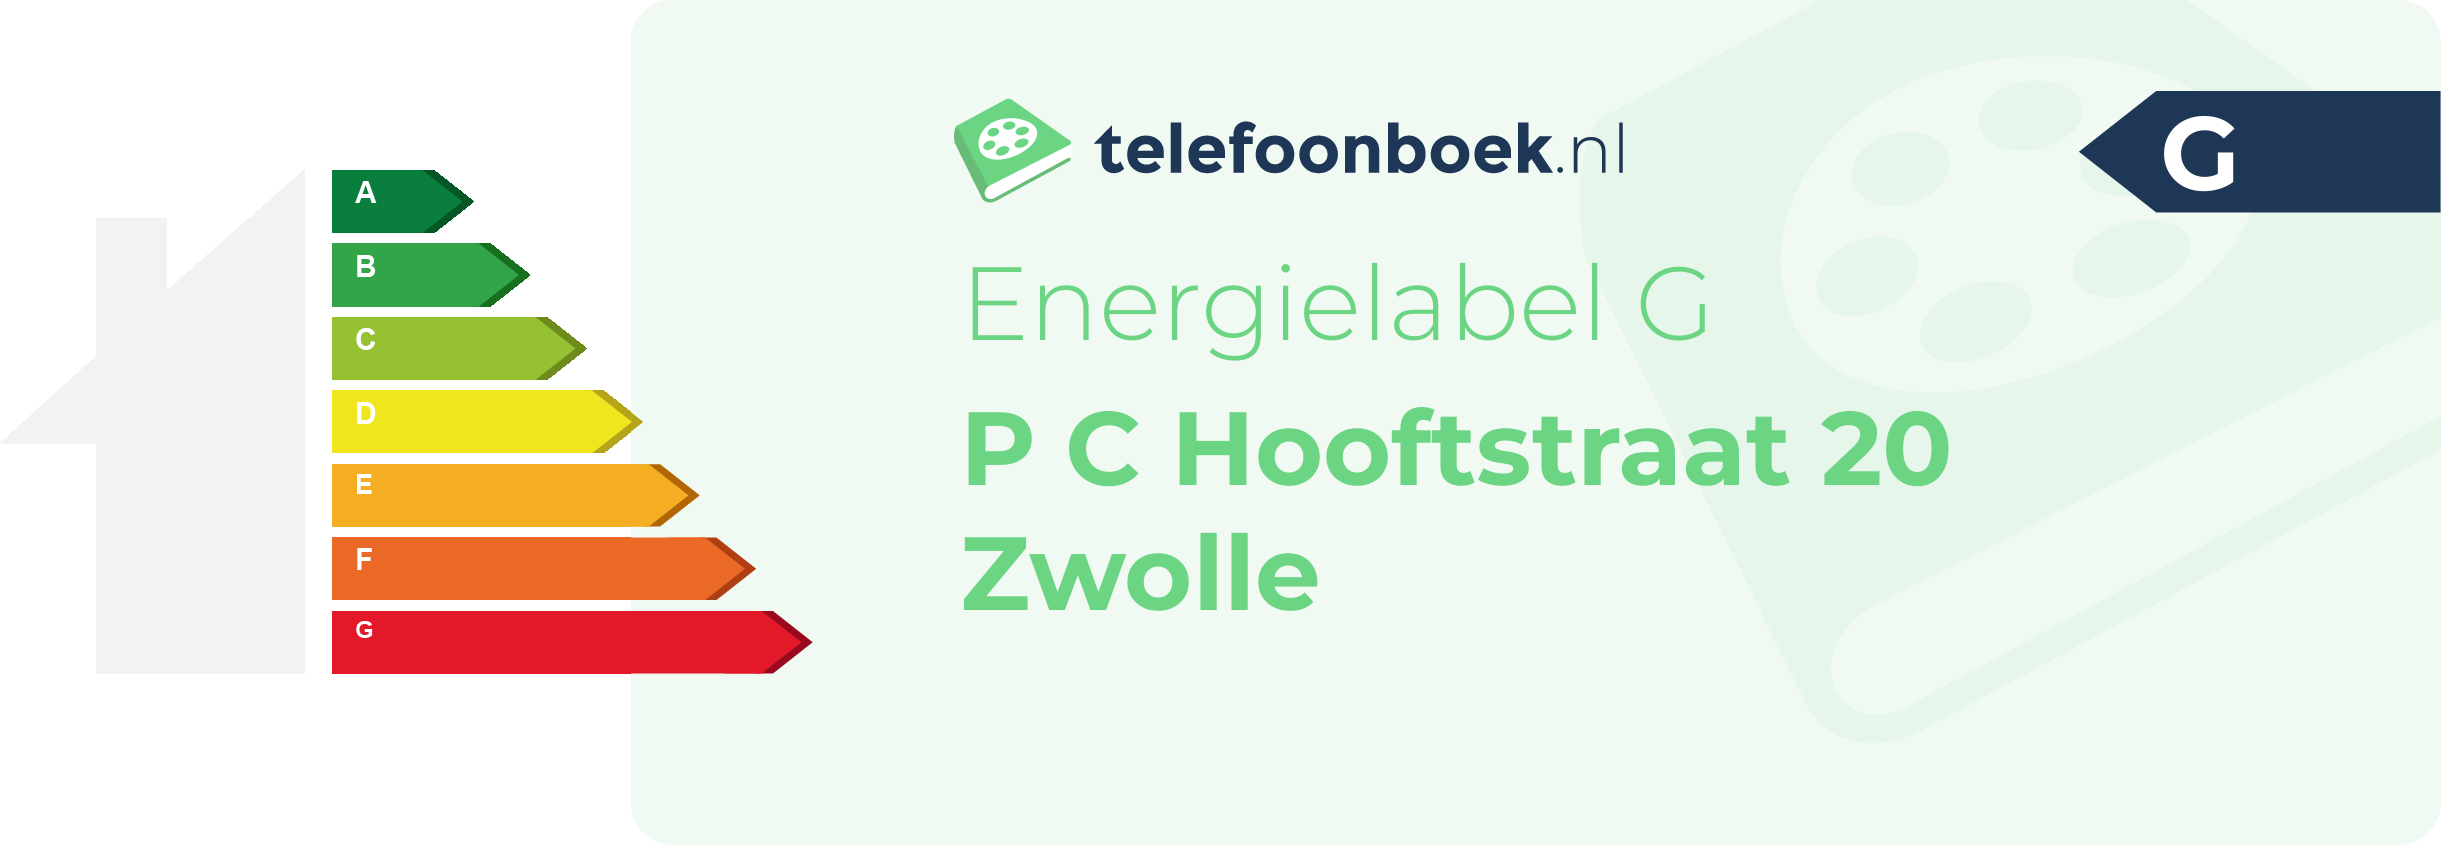 Energielabel P C Hooftstraat 20 Zwolle